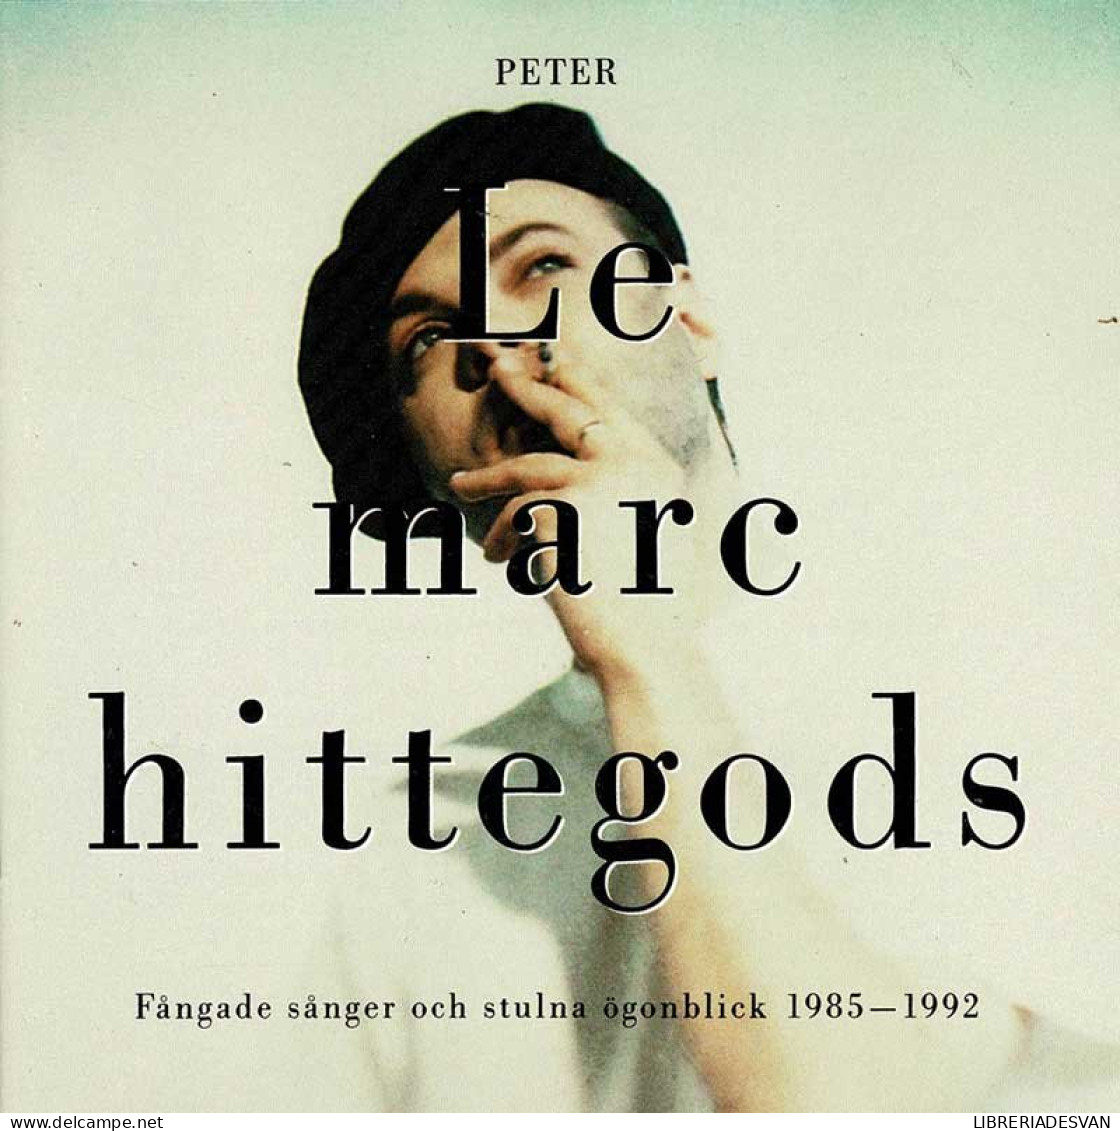 Peter LeMarc - Hittegods - Fangade Sanger Och Stulna Ogonblick 1985-1992. CD - Disco & Pop